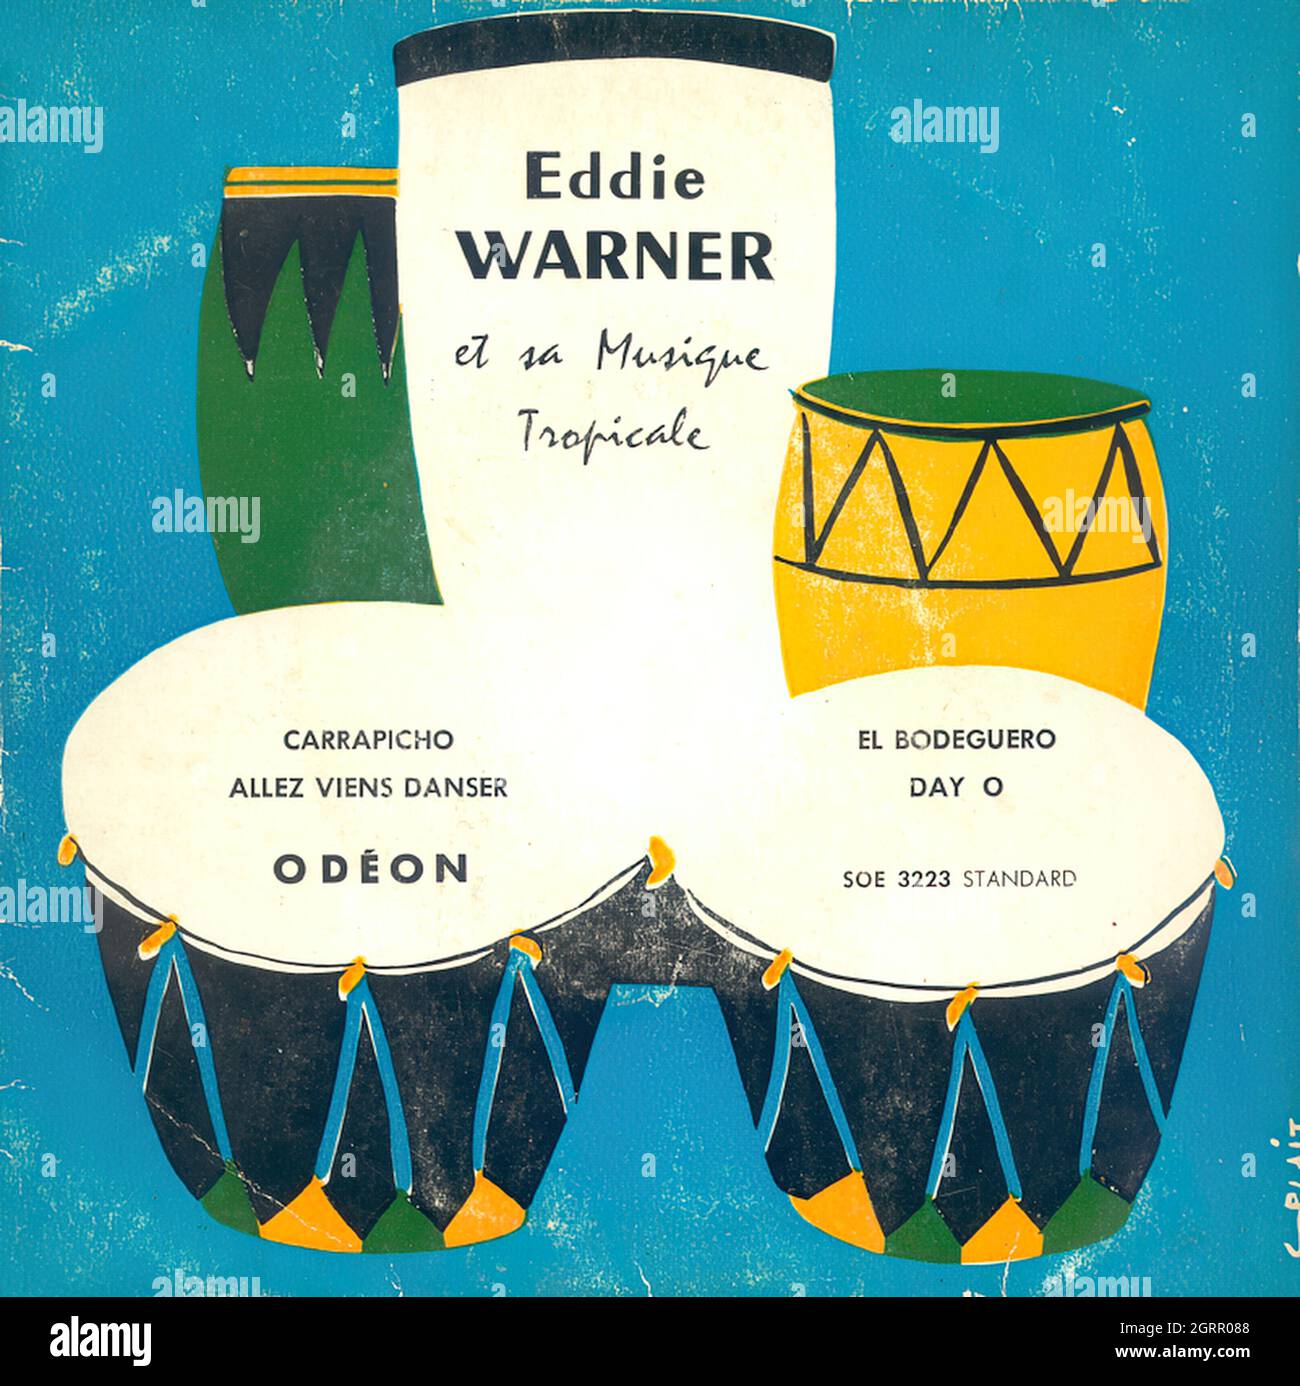 Eddie Warner et sa Musique Tropicale - Carrapicho - Vintage Vinyl Record Cover Stock Photo